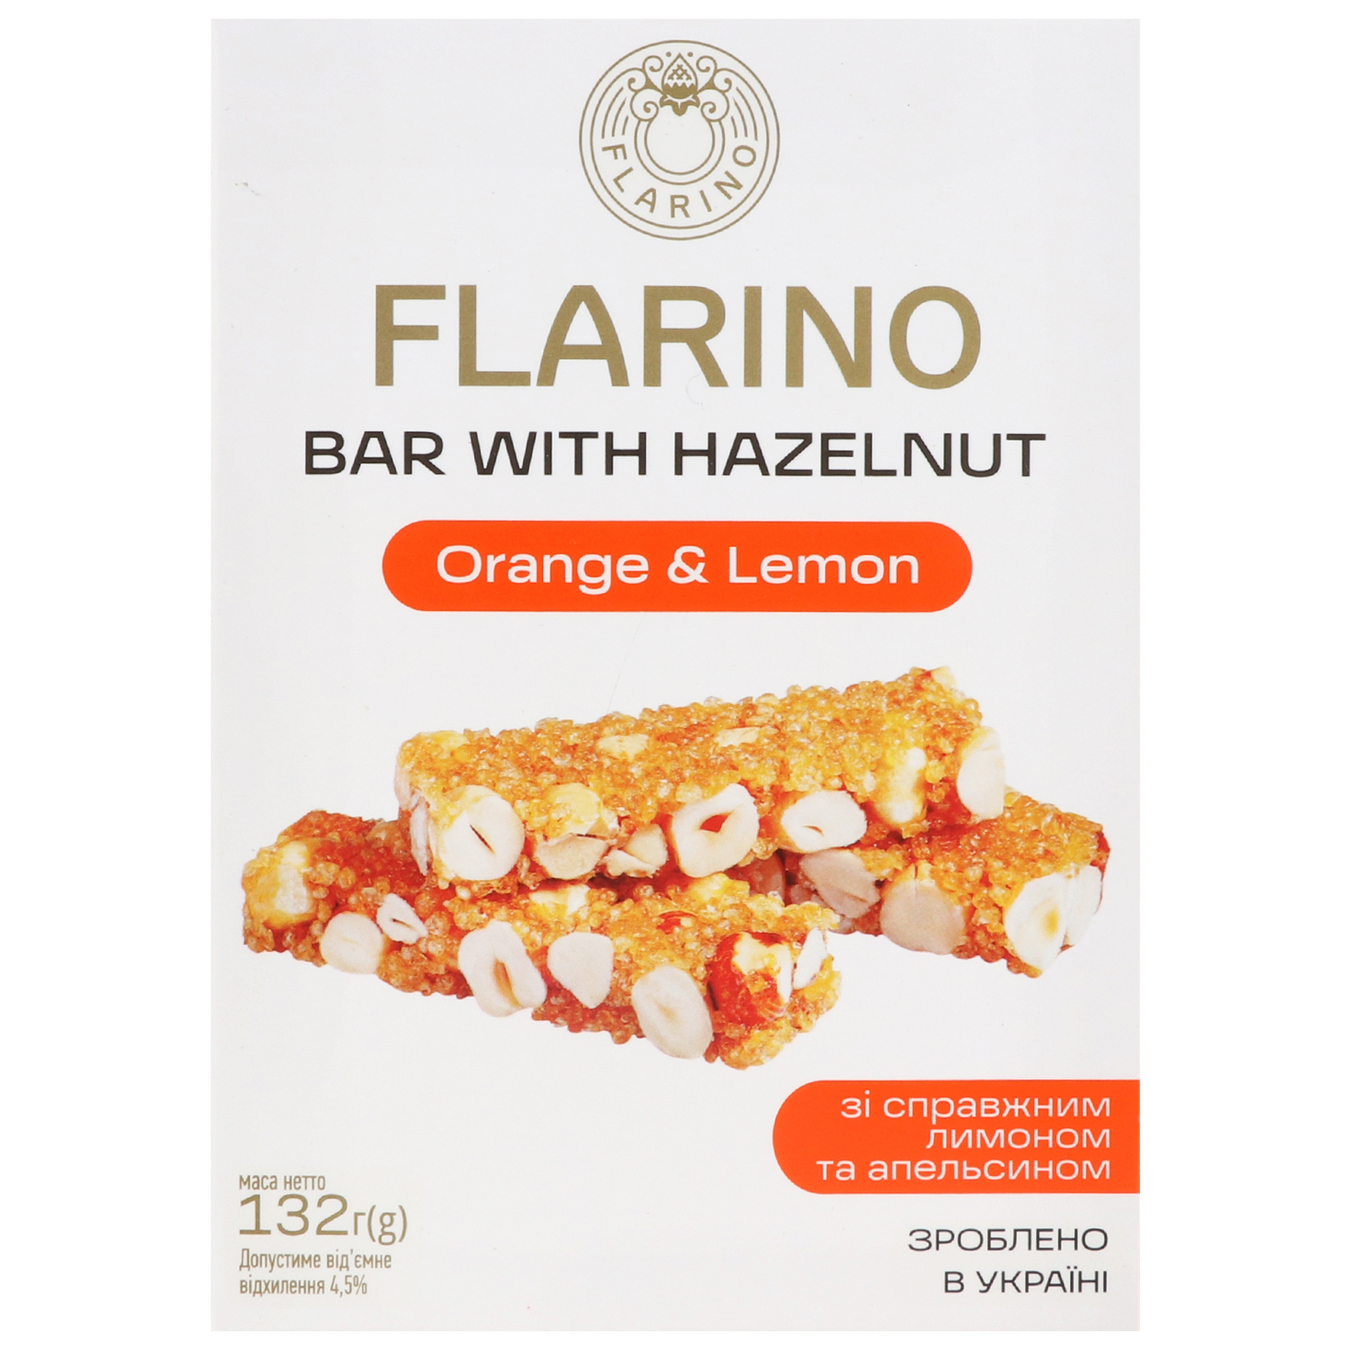 Flarino bars with hazelnut, lemon and orange 132g